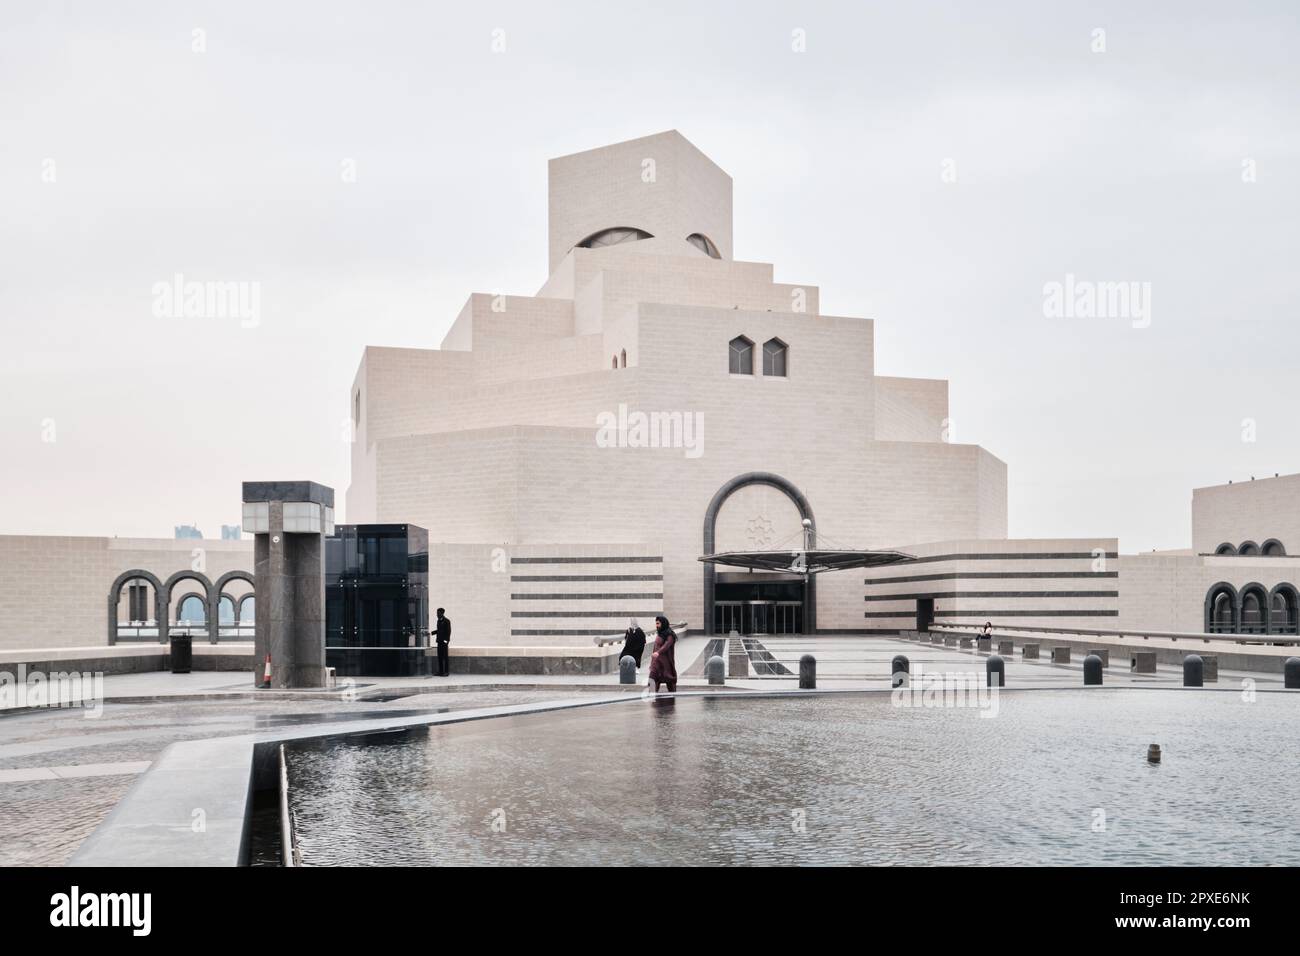 Doha, Katar - April 2023: Das berühmte Museum für islamische Kunst, das vom Architekten I. M. Pei entworfen wurde, befindet sich an der Corniche von Doha Stockfoto